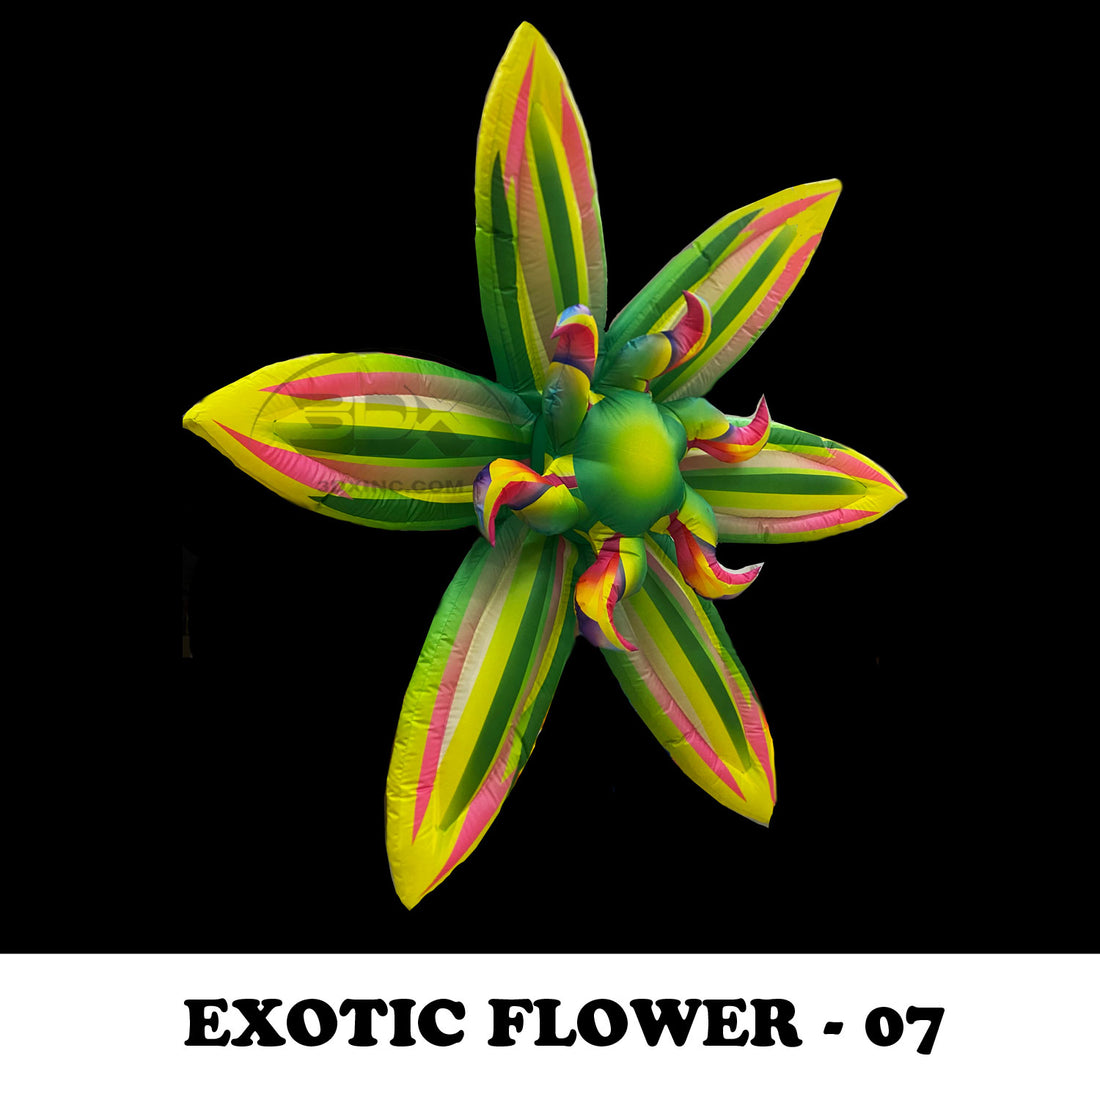 EXOTIC FLOWER - 07